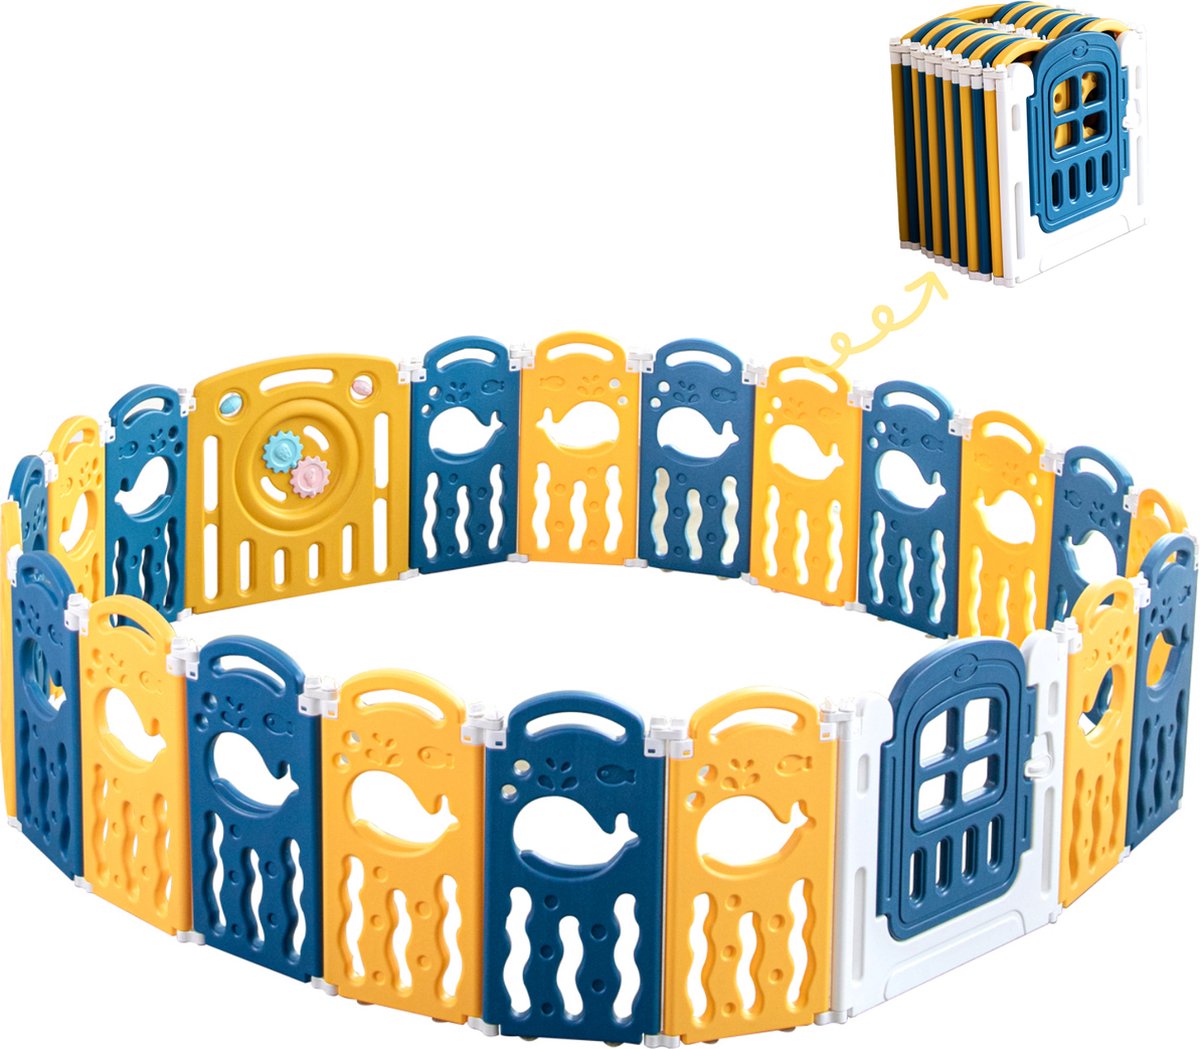 K IKIDO Kunststof Grondbox - Kinderbox - Babybox - Zuigeling & Peuter Spelen Hek - HDPE Paneel Speelbox - Opvouwbare Baby Speelruimte met Veiligheidsslot - 180 * 210 cm